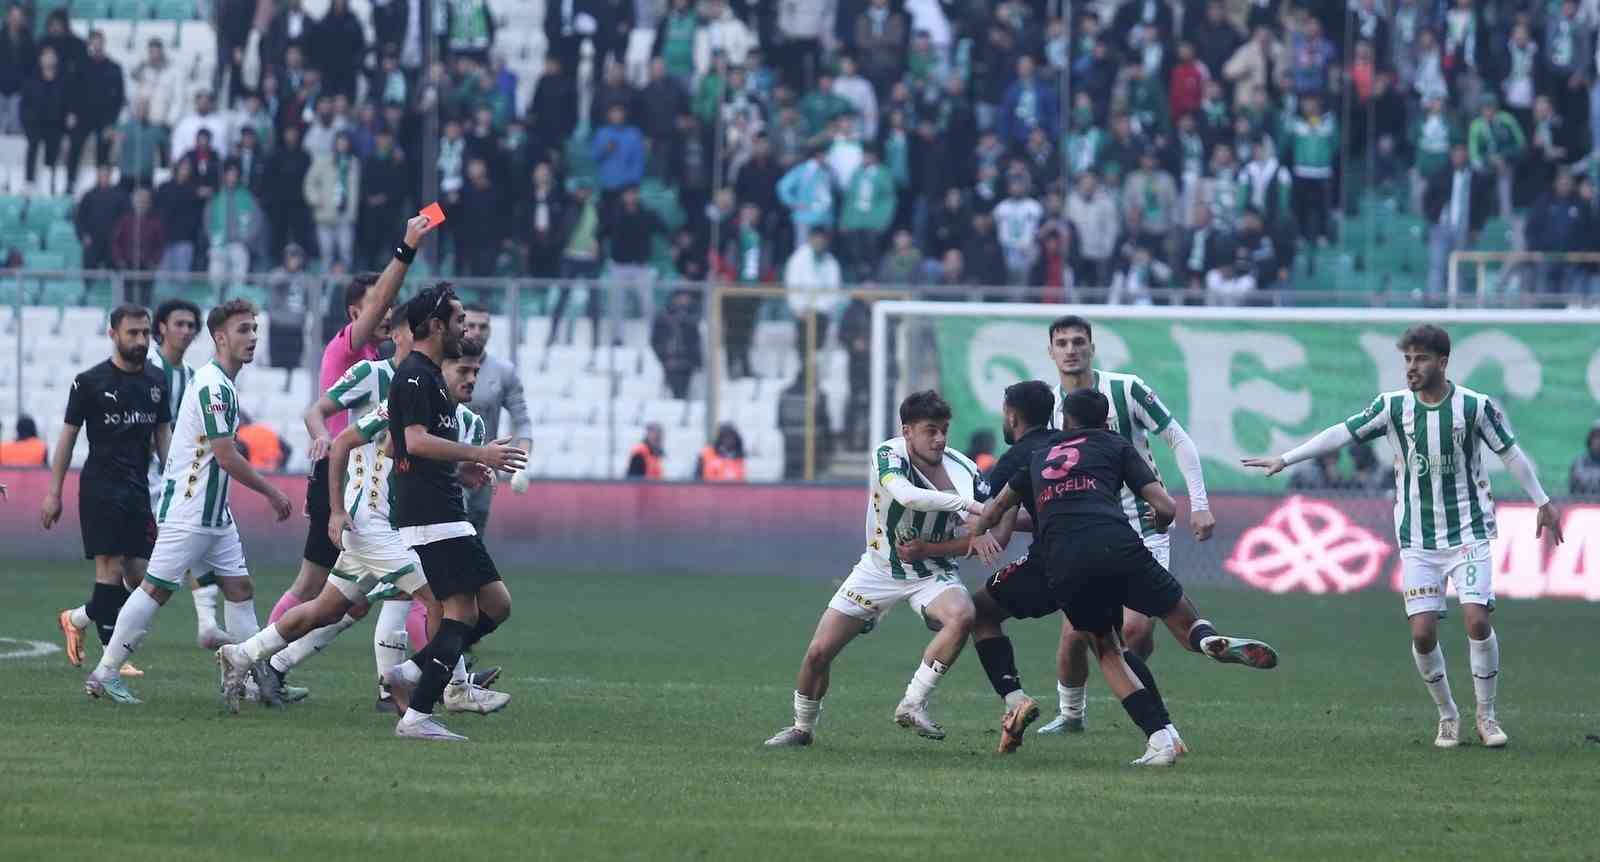 Pfdkdan Bursasporlu 7 Futbolcuya Men Cezası